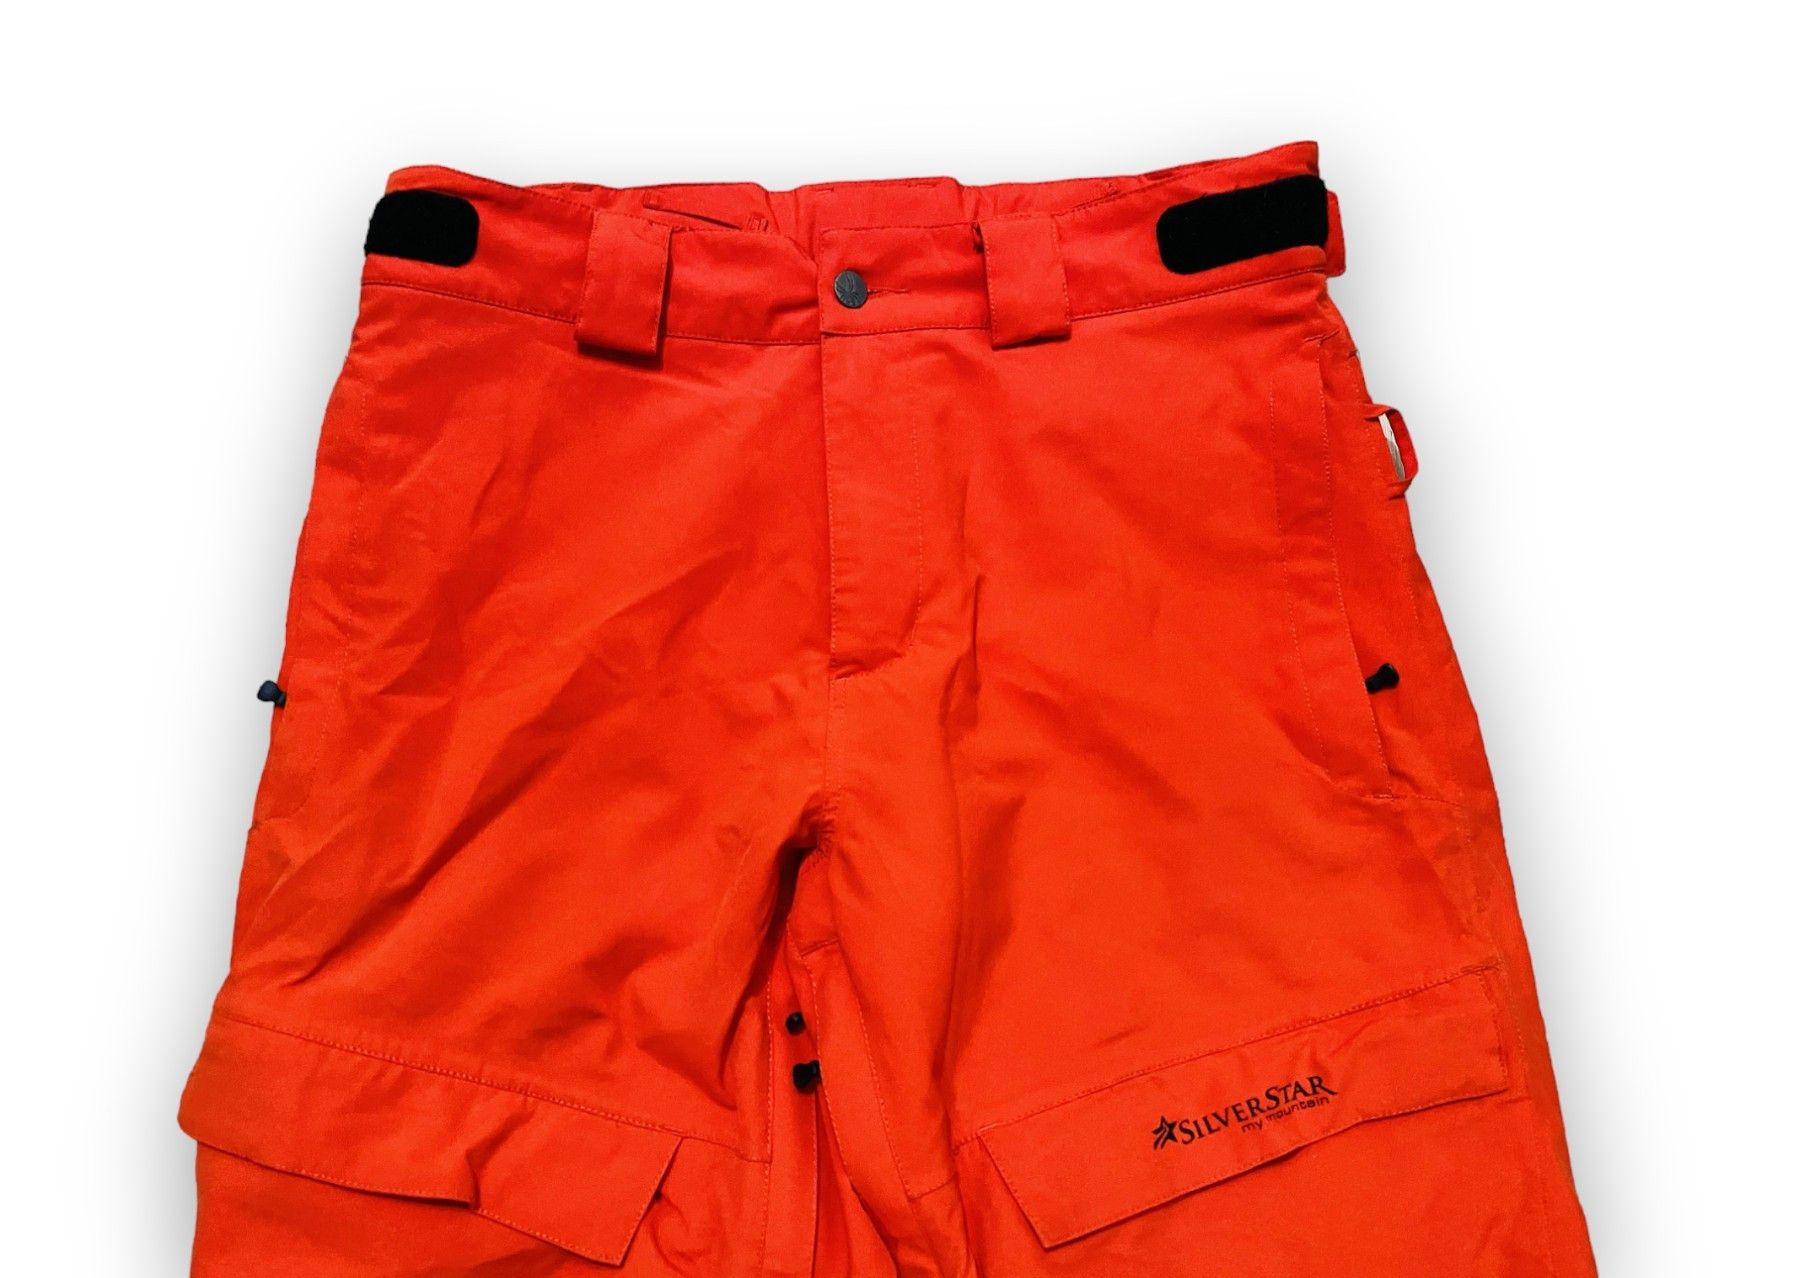 Outdoor Life - Spyder Pants Snowboarding Ski Outdoor Orange Men's M/L - 5